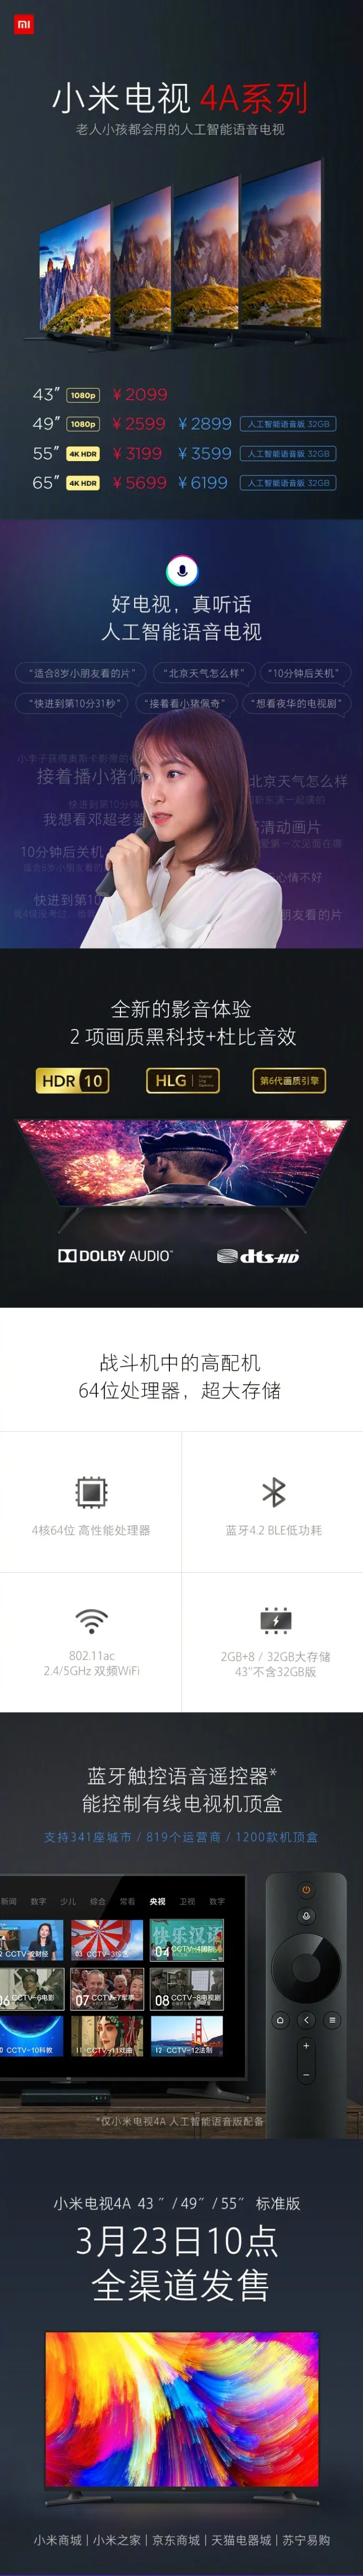 小米电视4A系列发布：“会听话”的人工智能语音、HDR10